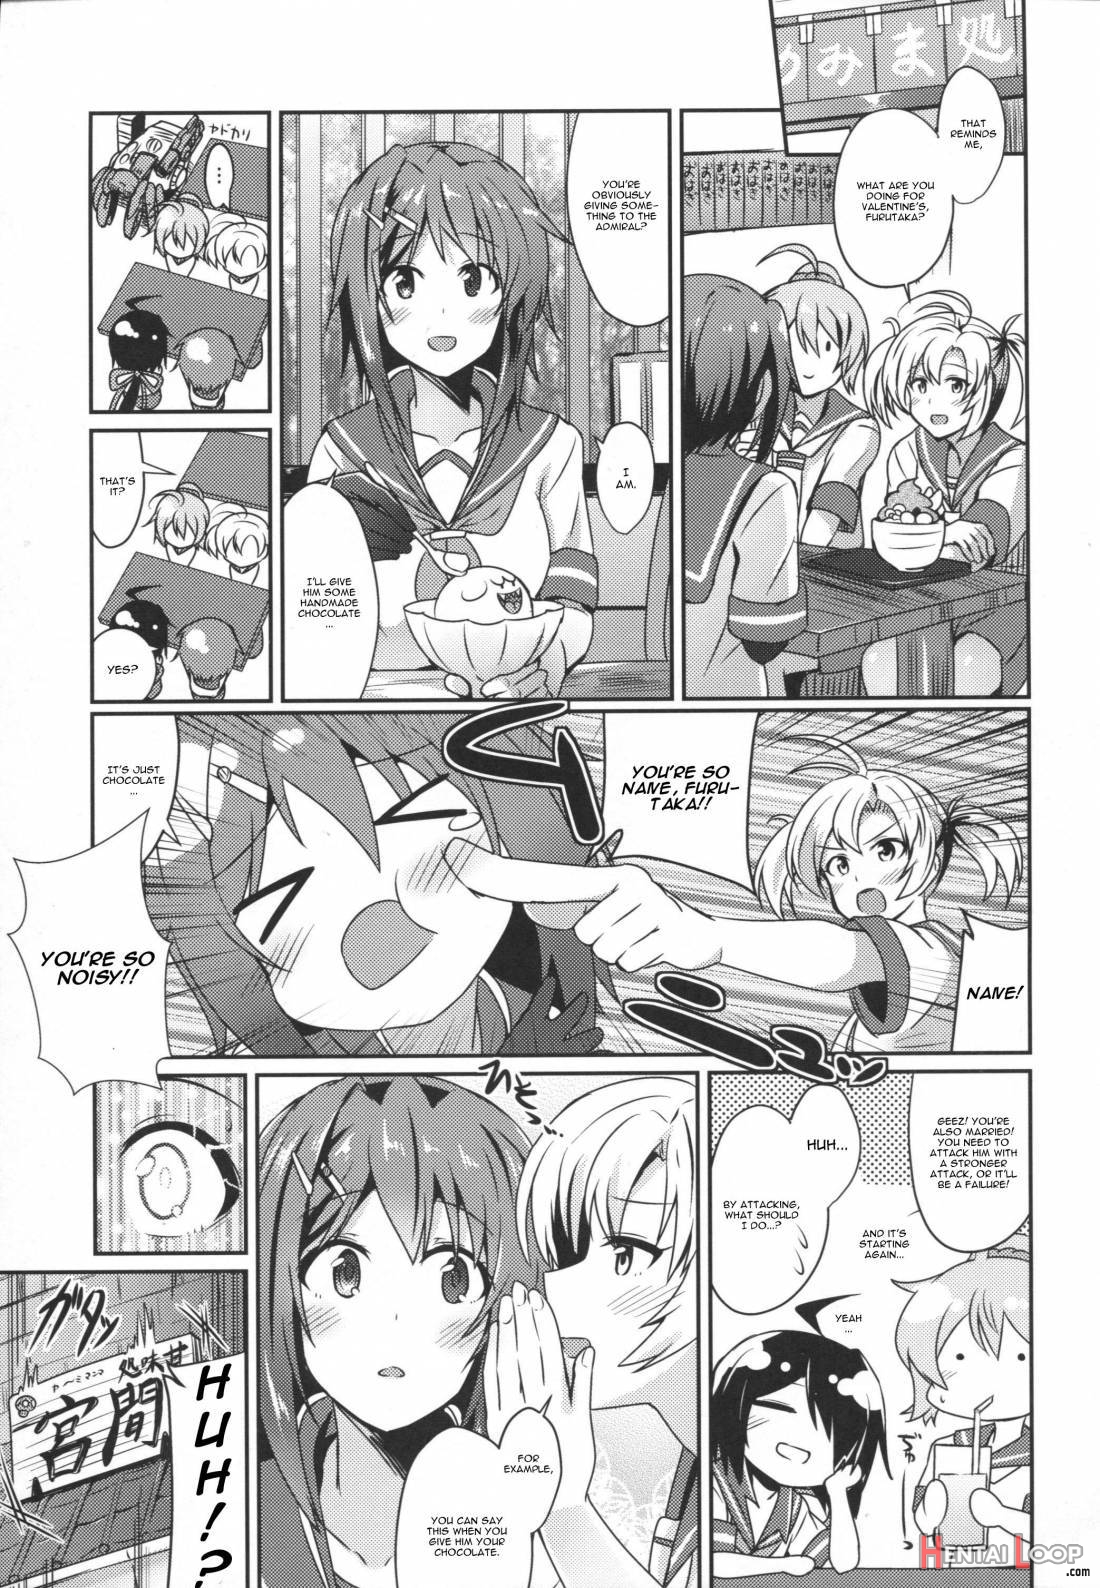 Furutaka wo meshiagare page 2